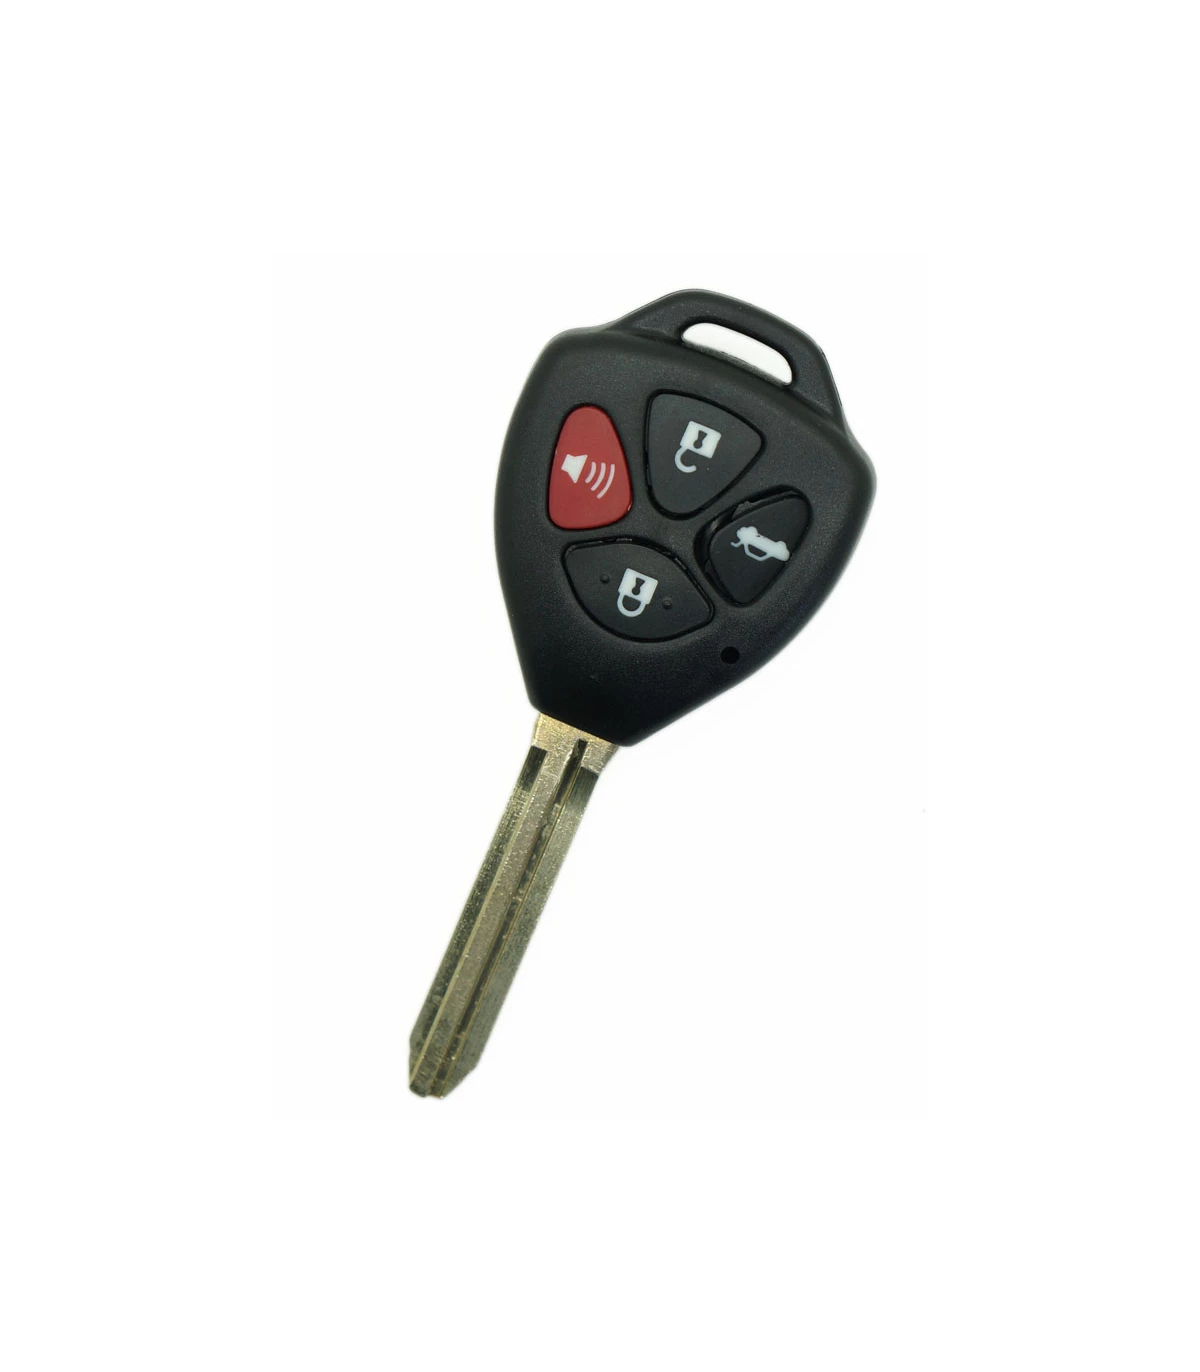 Coque de clé Toyota compatible Yaris, RAV4, Celica, Corolla